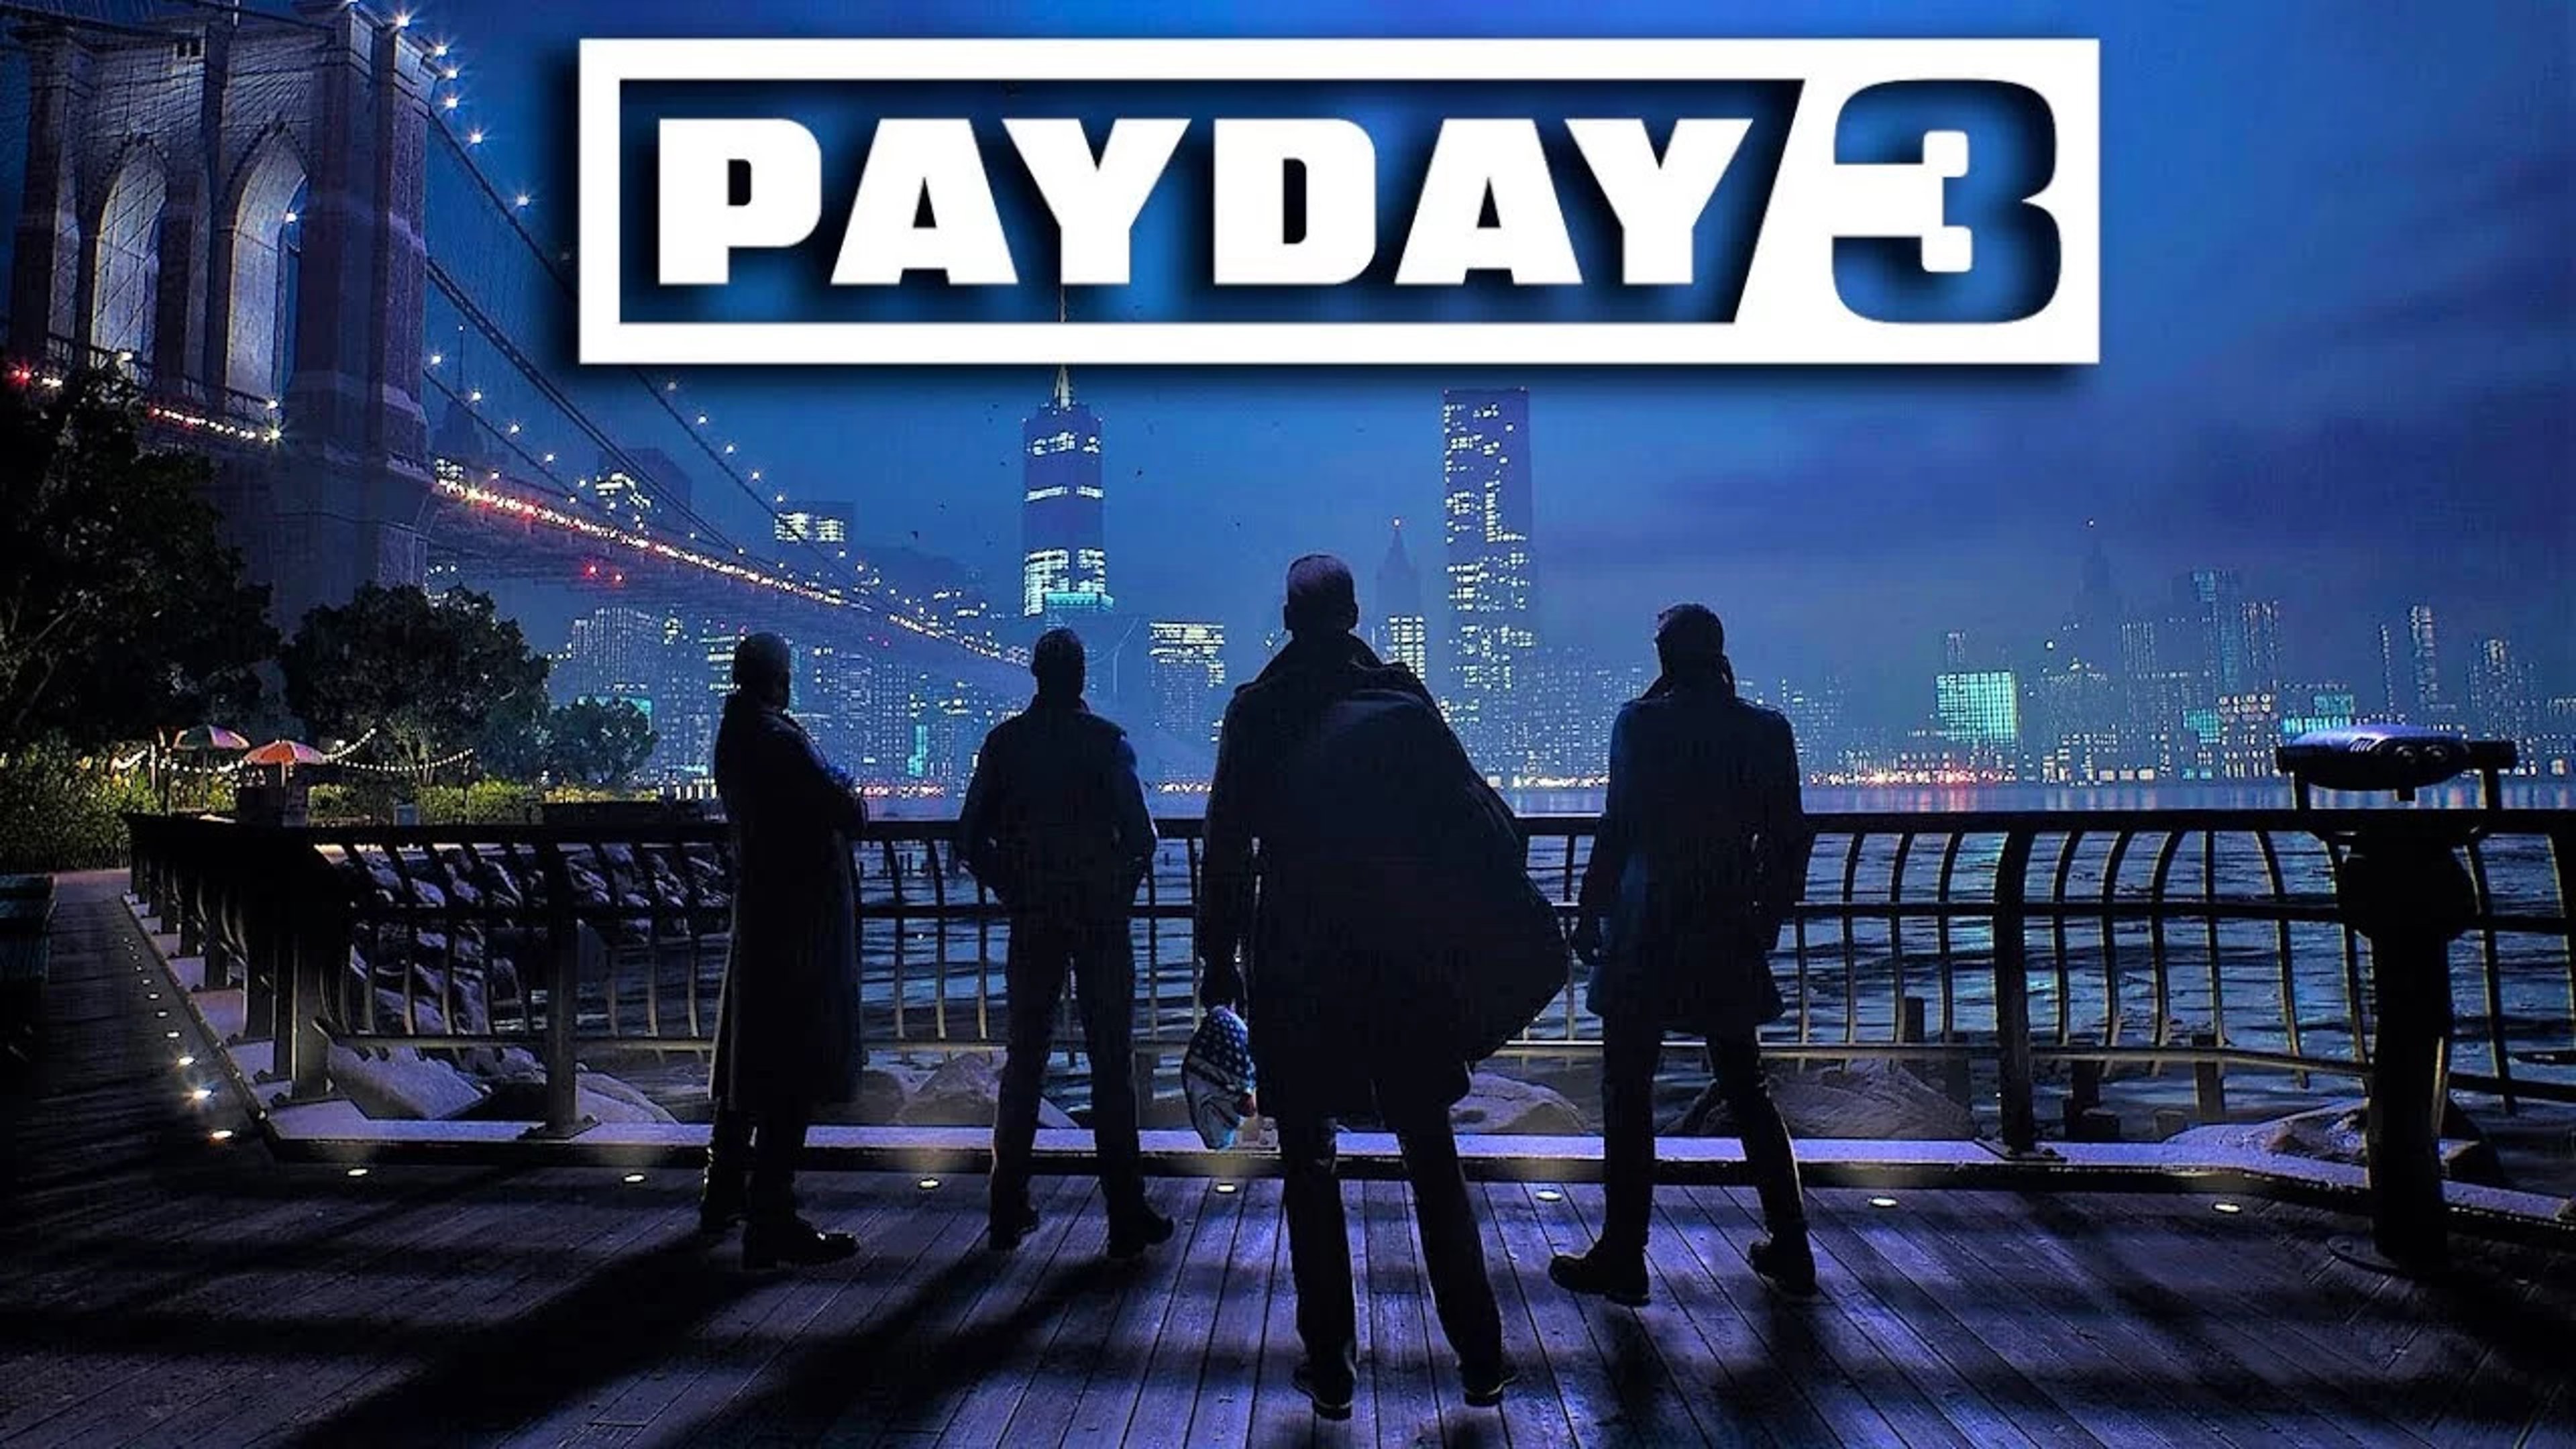 Payday 3, Recensione: il gioco di rapine più famoso è tornato Copertina